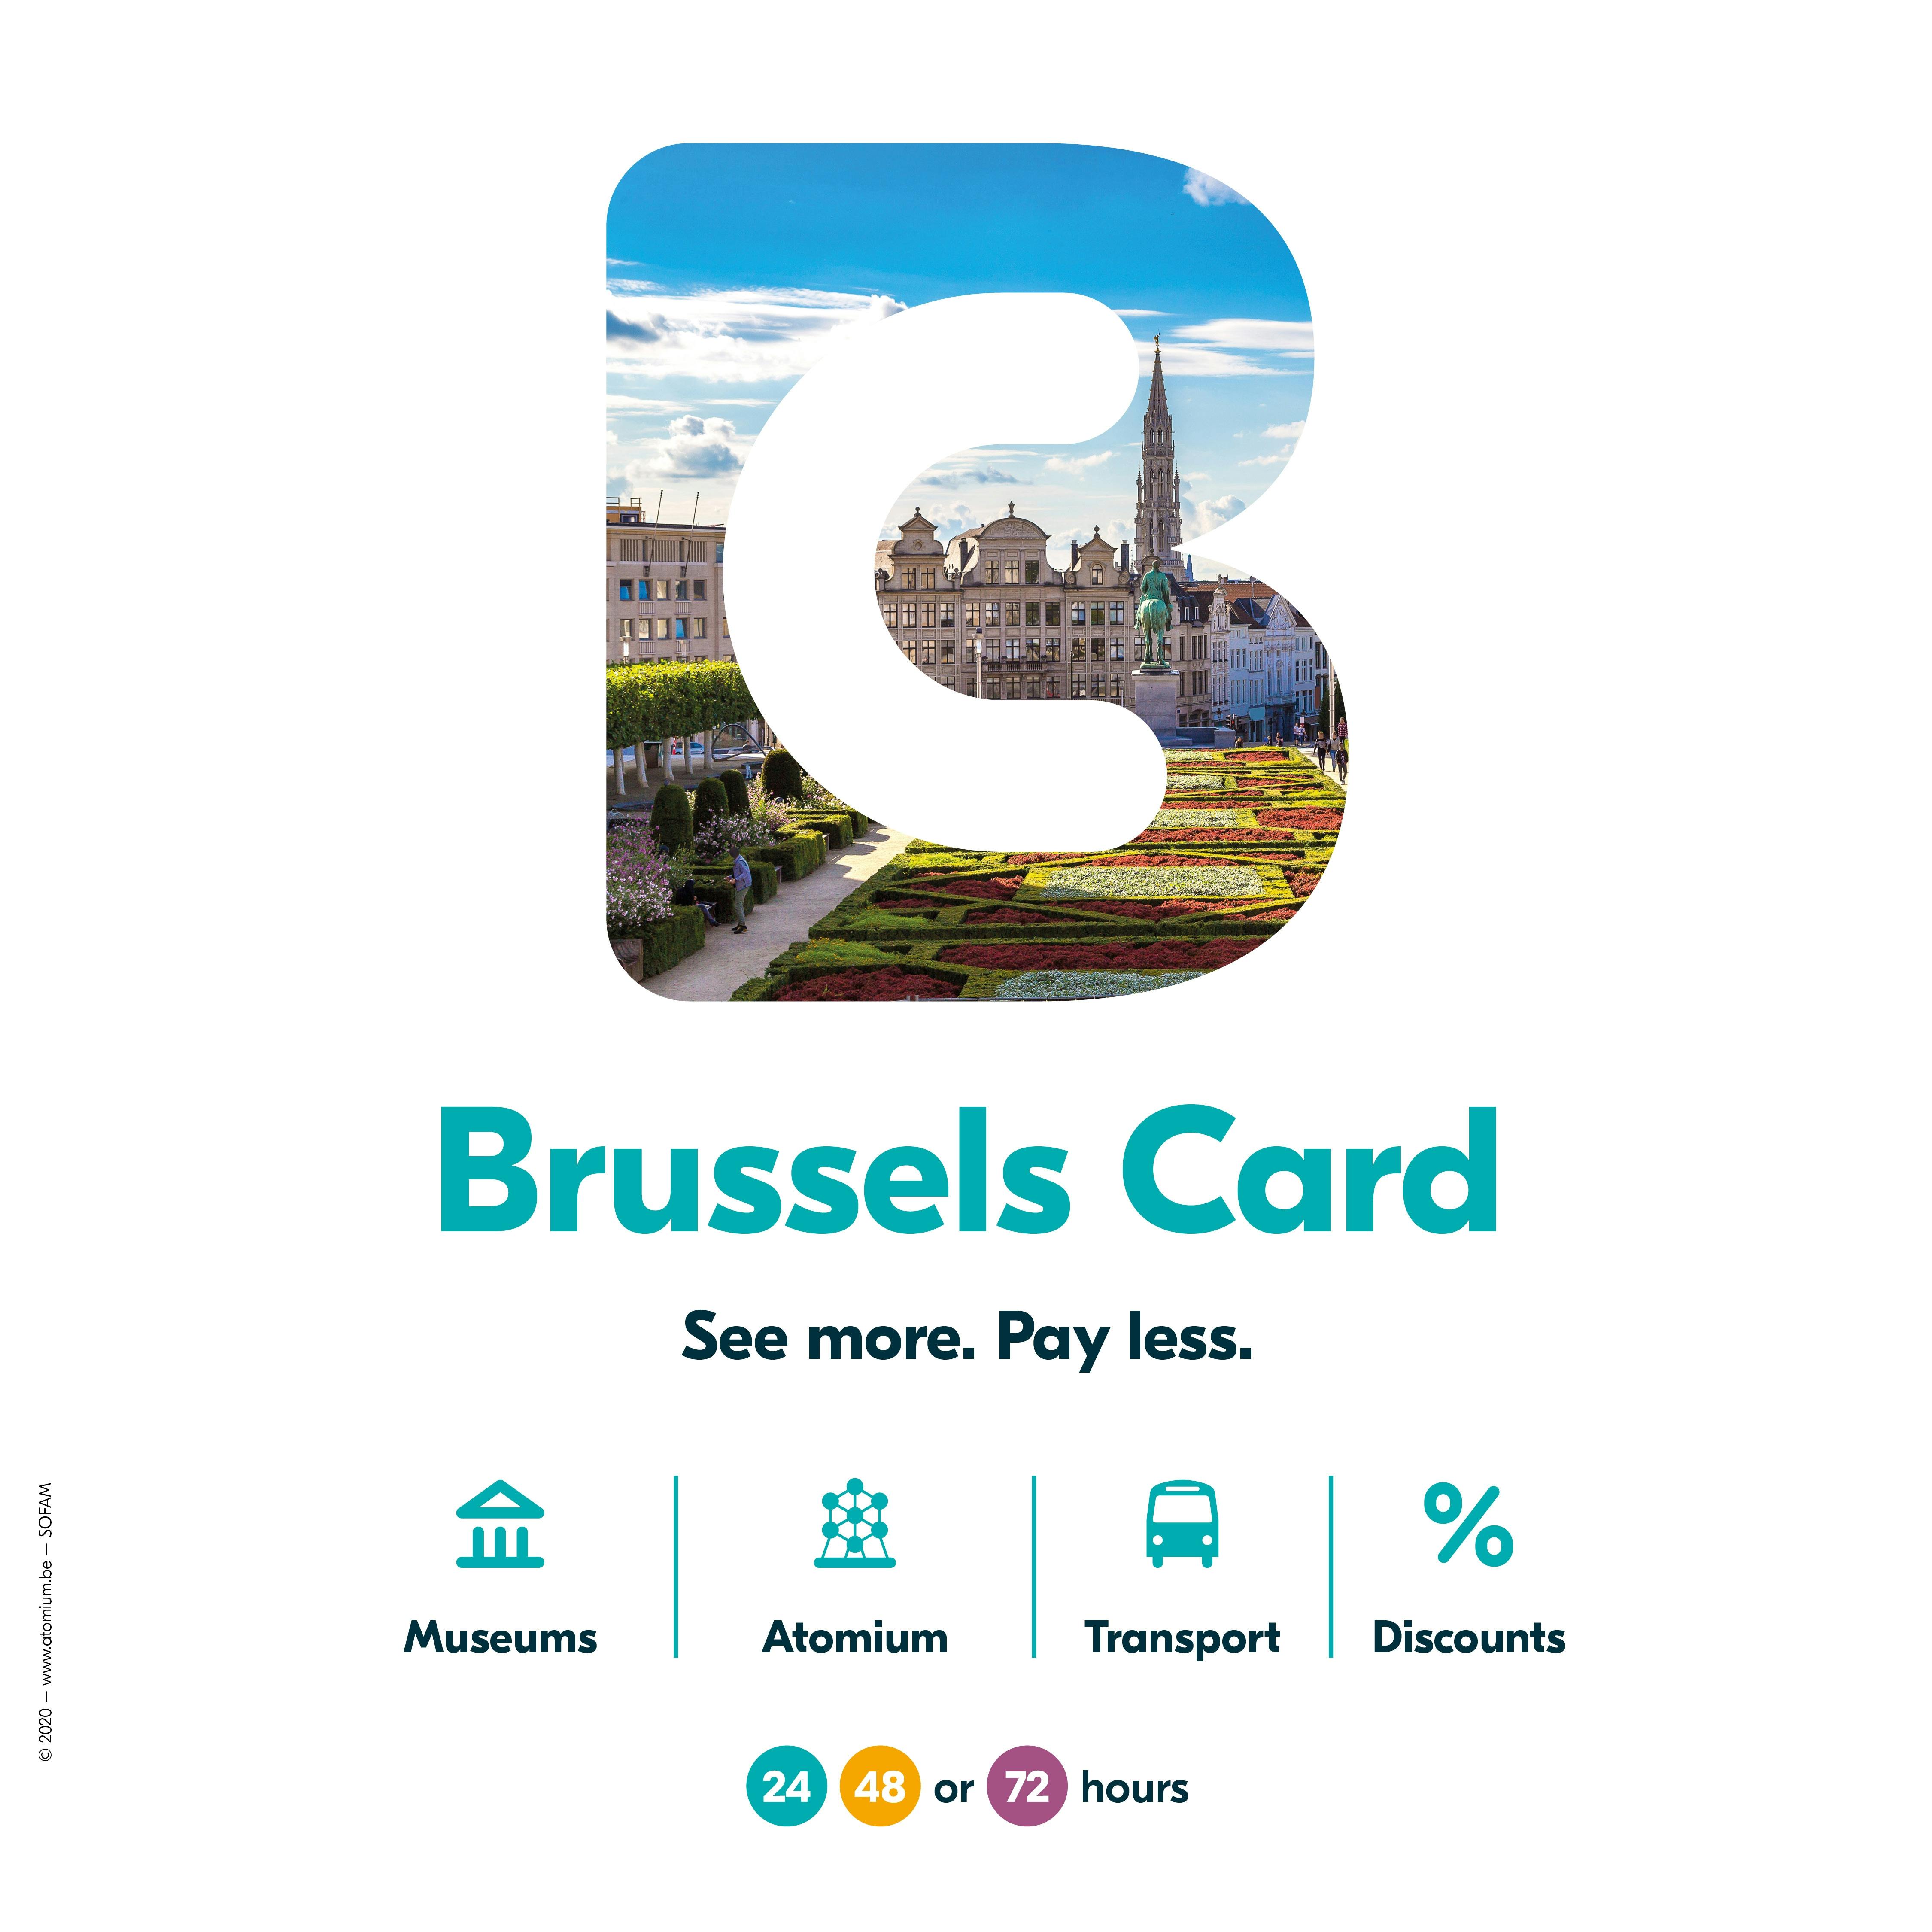 Brüssel City Card für 24, 48 oder 72 Stunden mit Nahverkehr oder Atomium